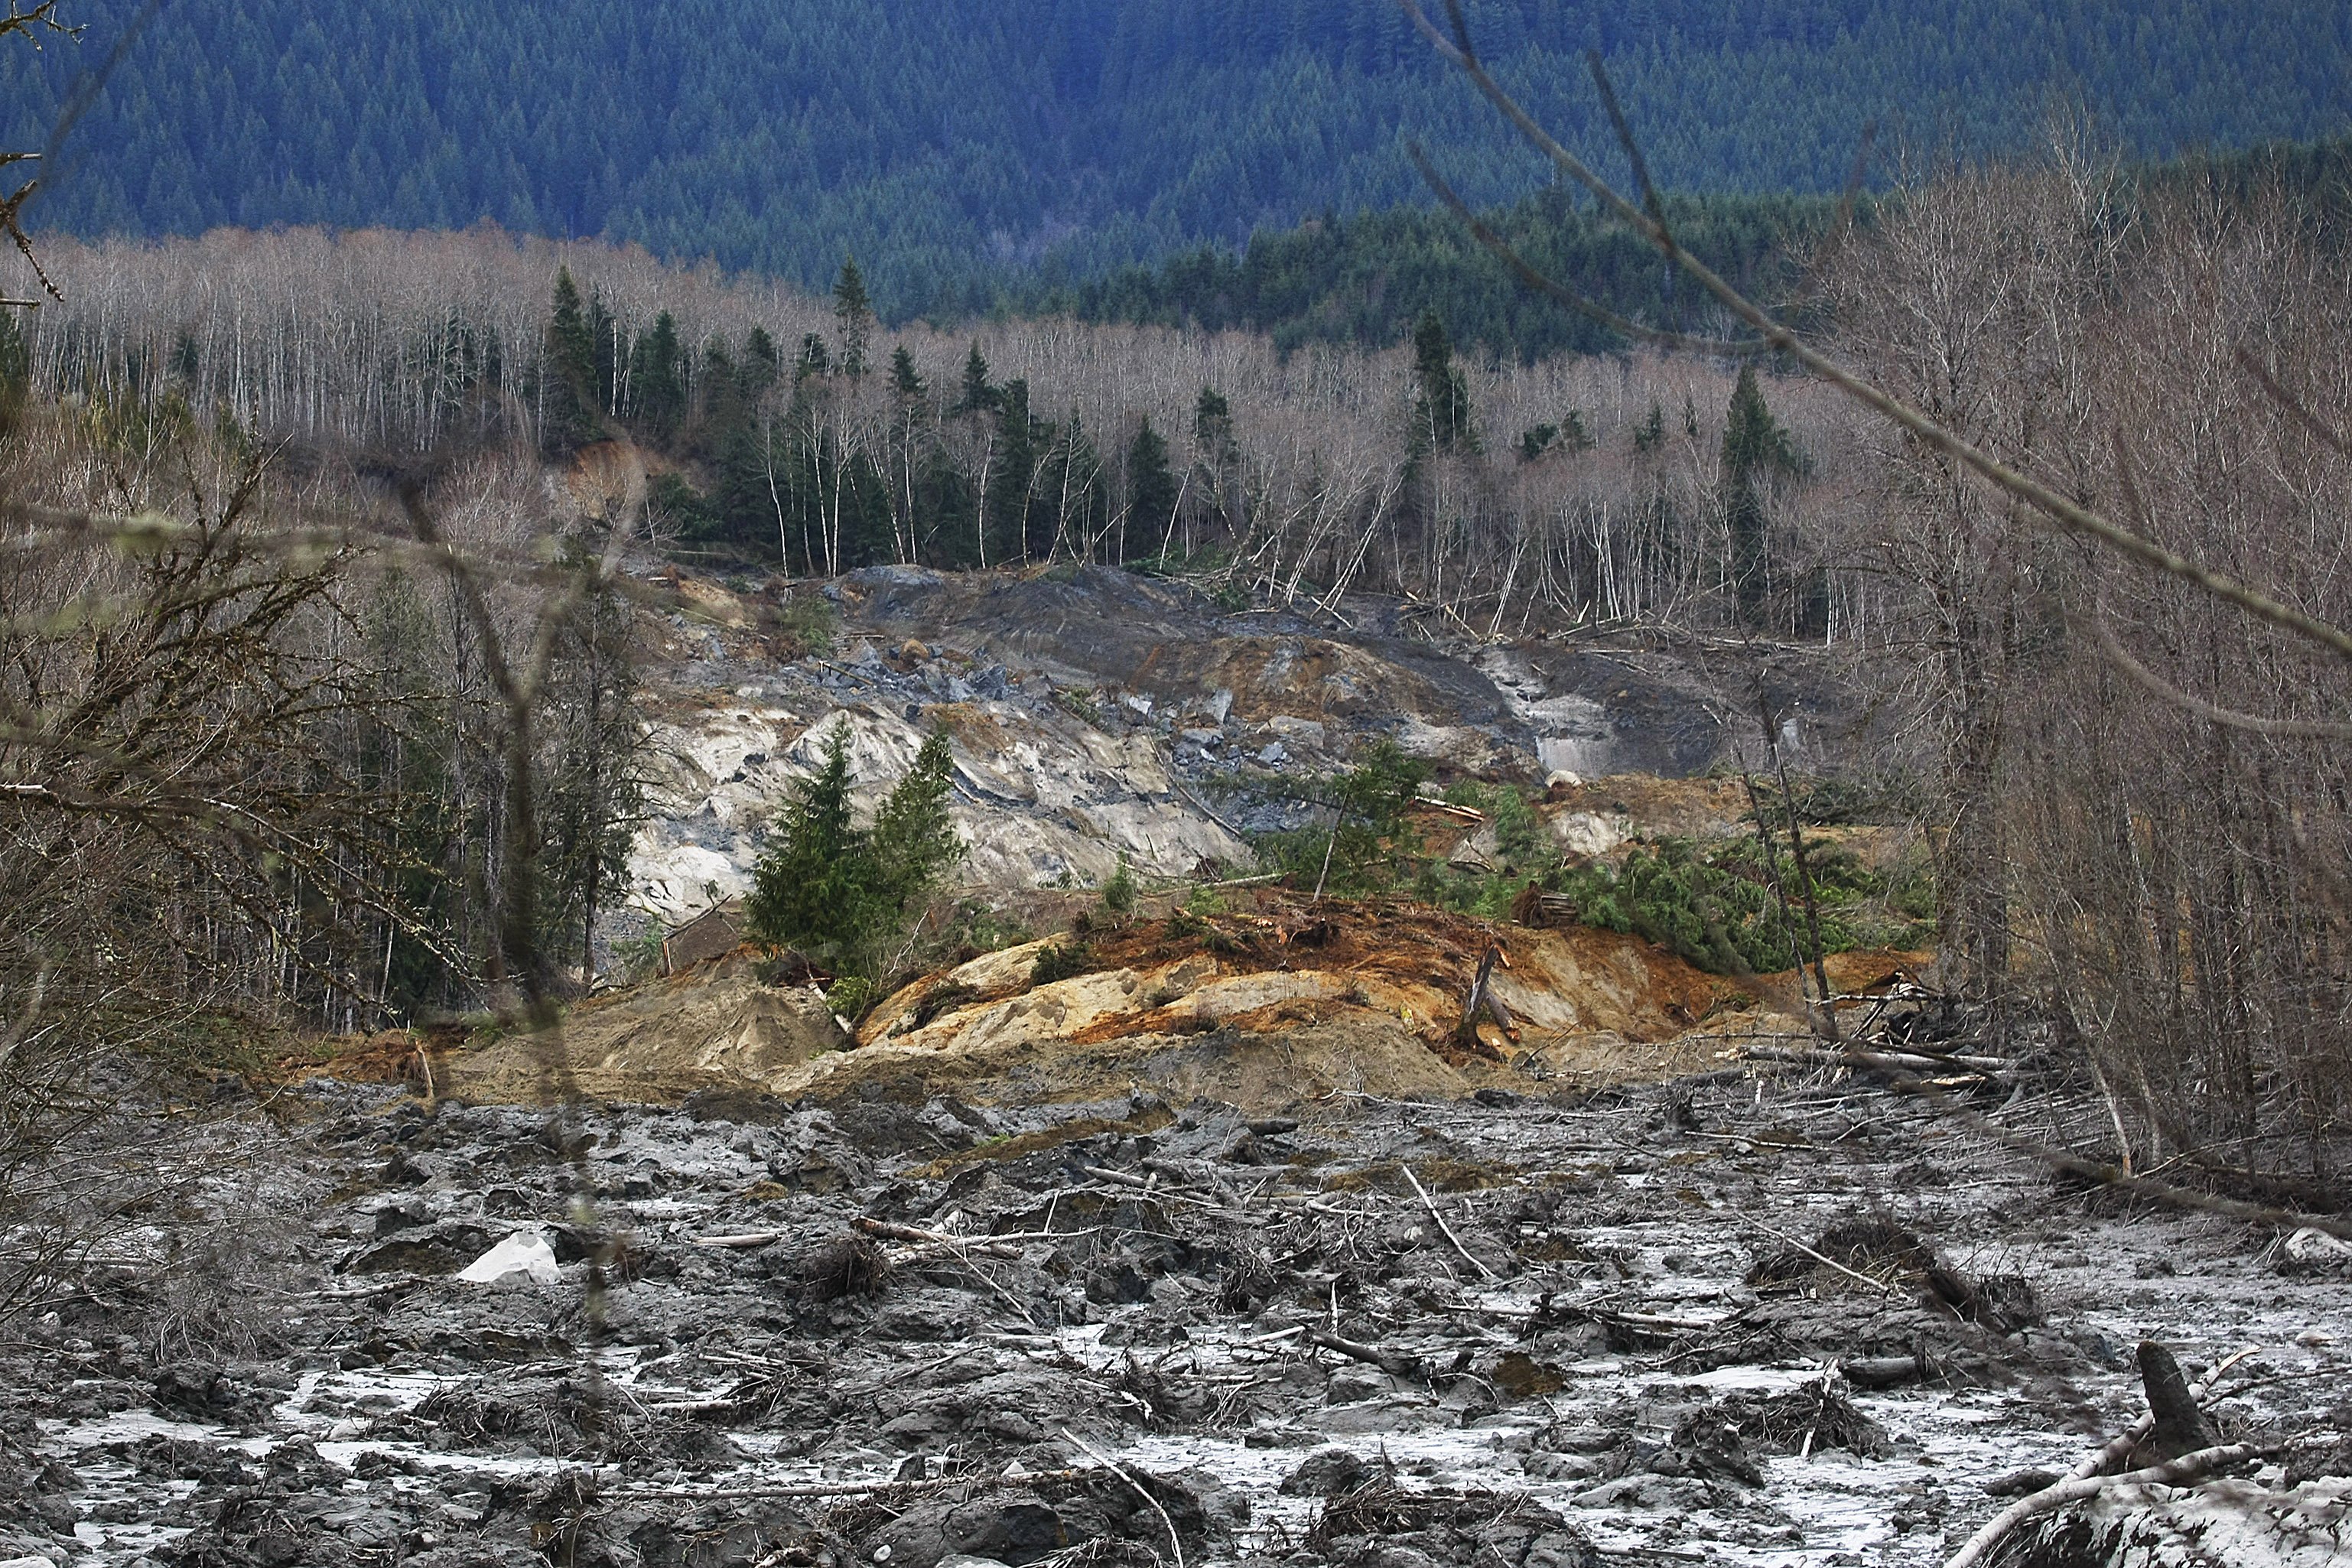 snohomish, Mudslide, Landslide, Nature, Natural, Disaster, Landscape, Forest, River Wallpaper